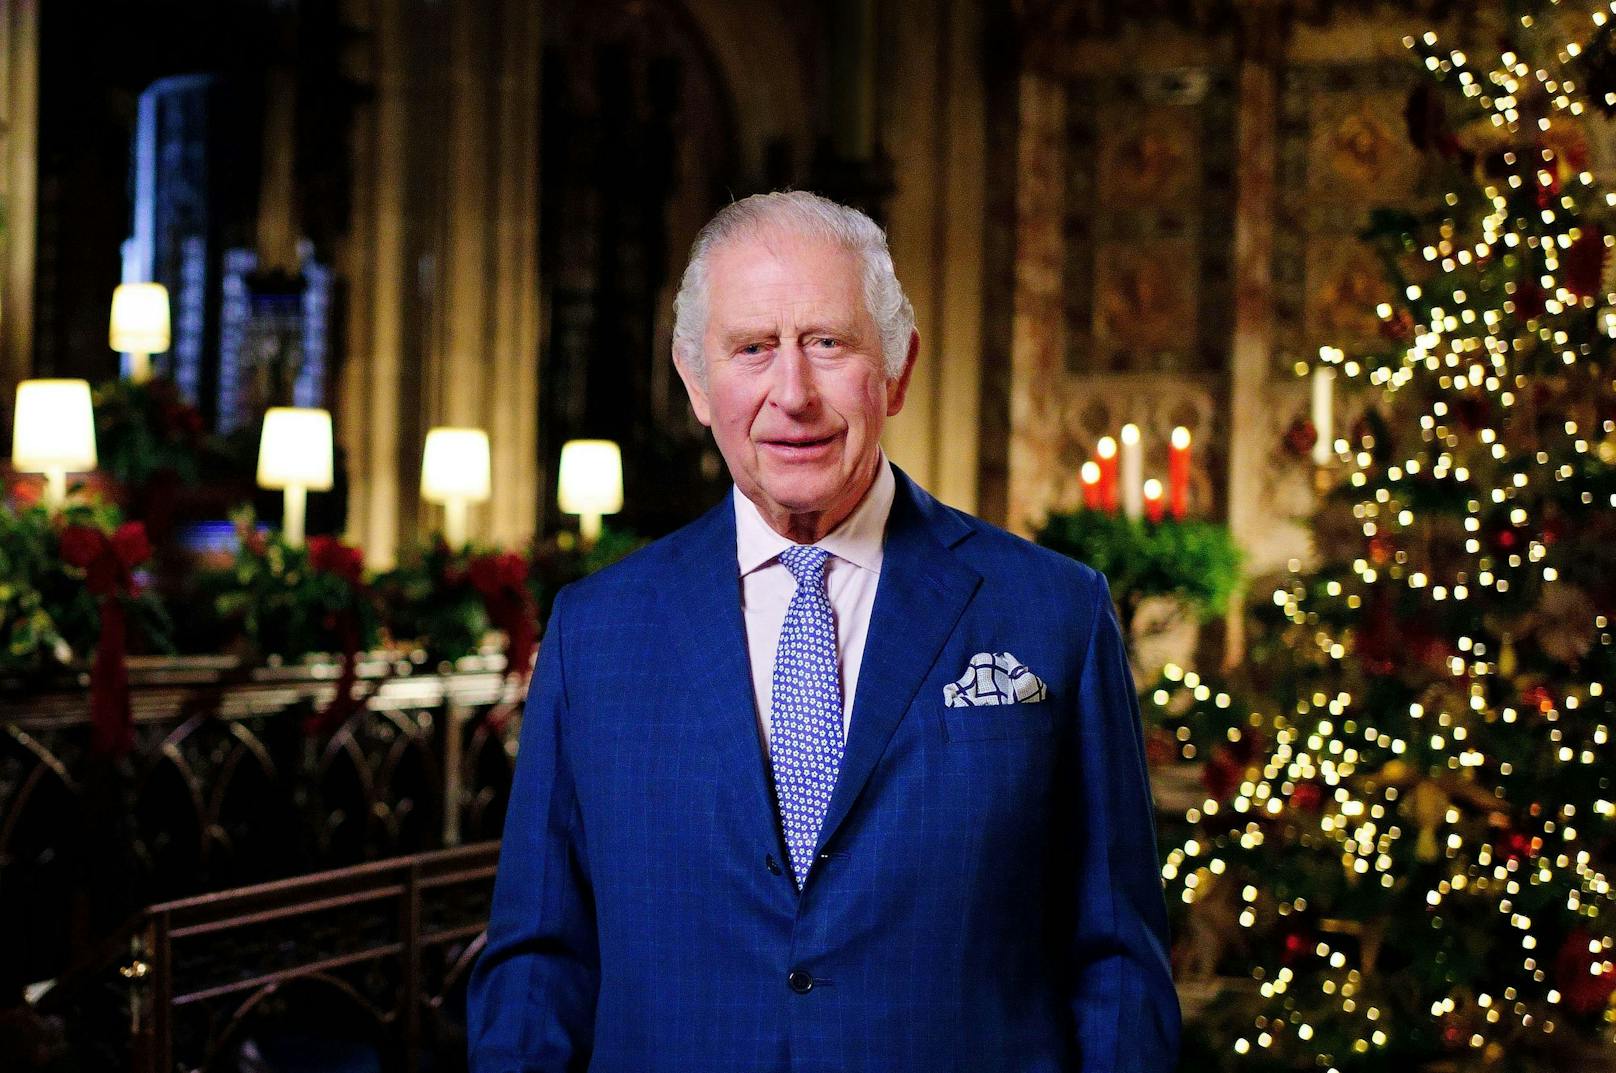 König Charles hielt seine erste Weihnachtsrede am 23.12.2022 in Windsor.